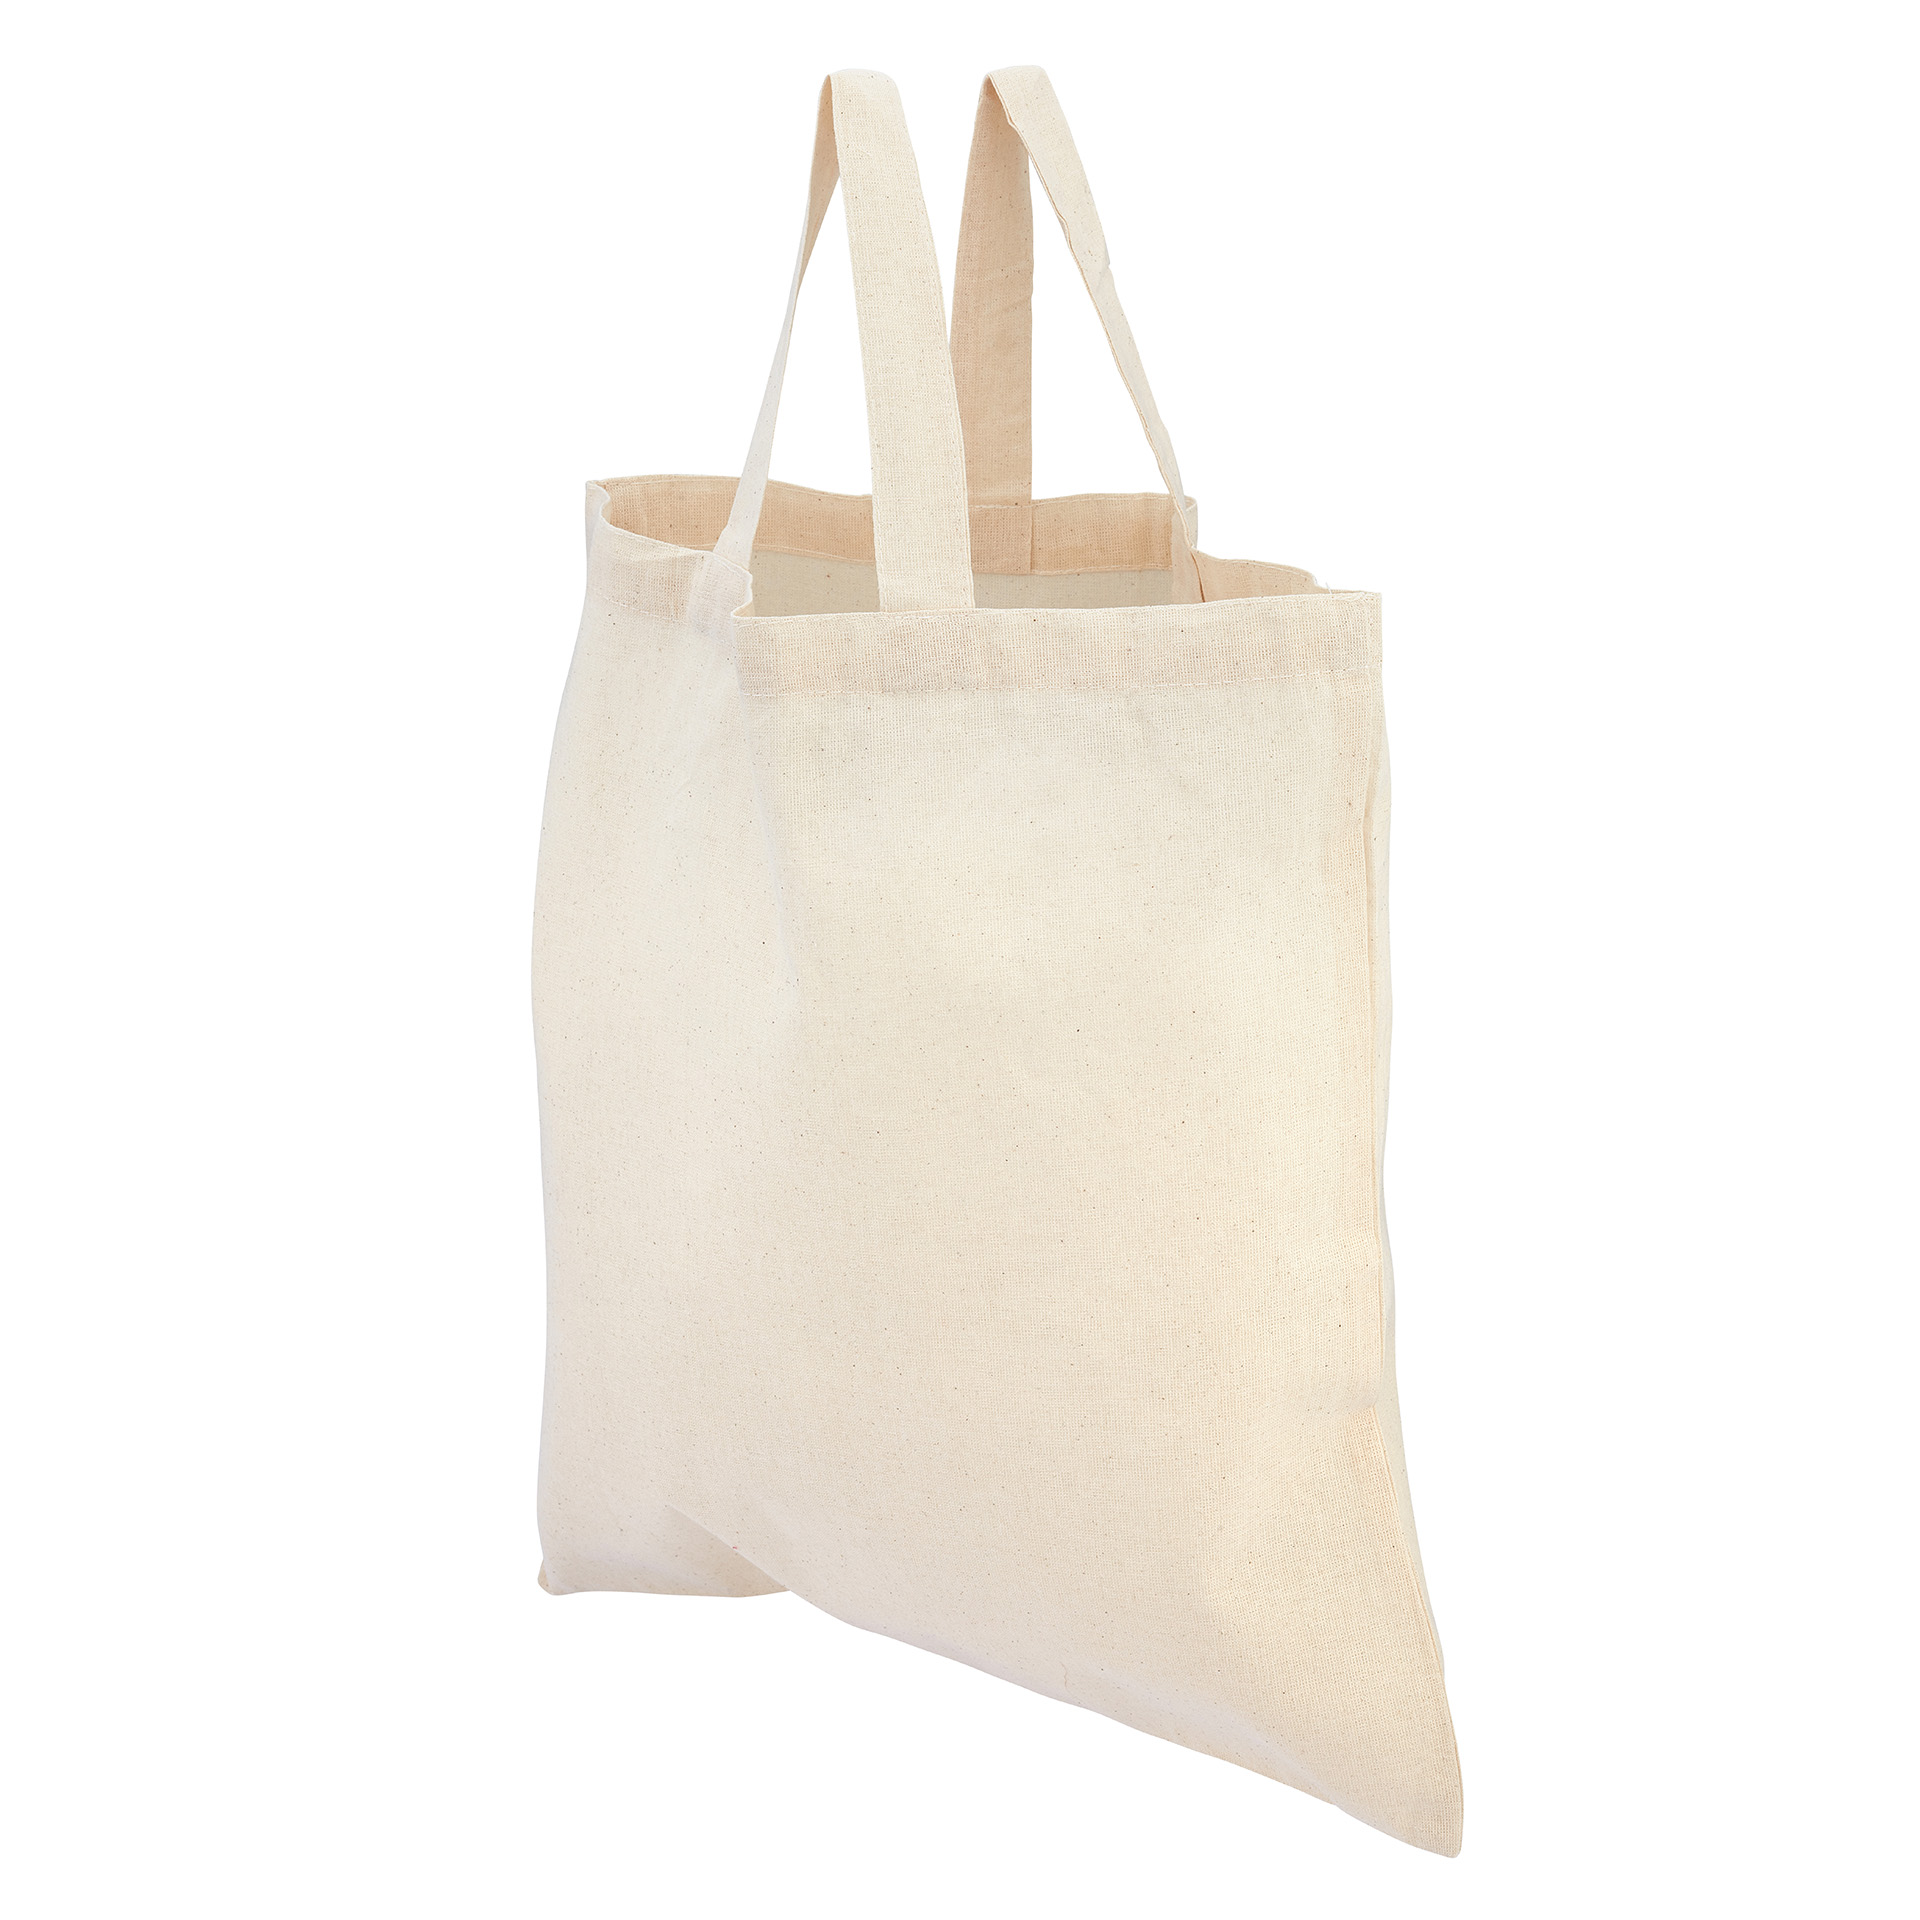 Green & Good Portobello Bag Short Handles - Cotton